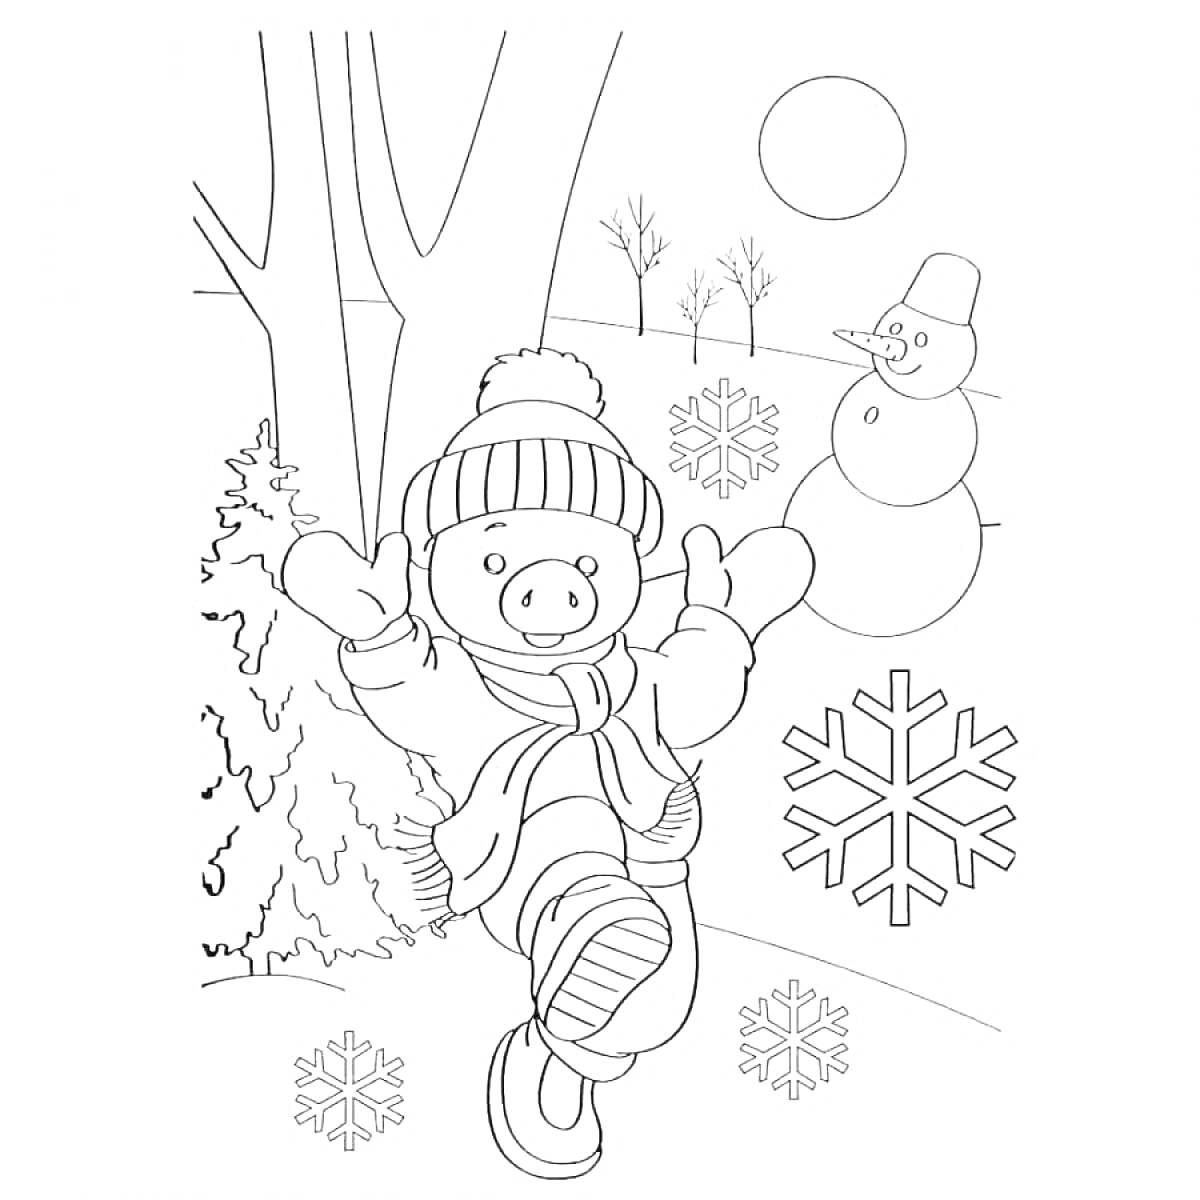 Раскраска Зима с поросенком, деревом, снеговиком, двумя снежинками, елью и солнцем на горизонте.